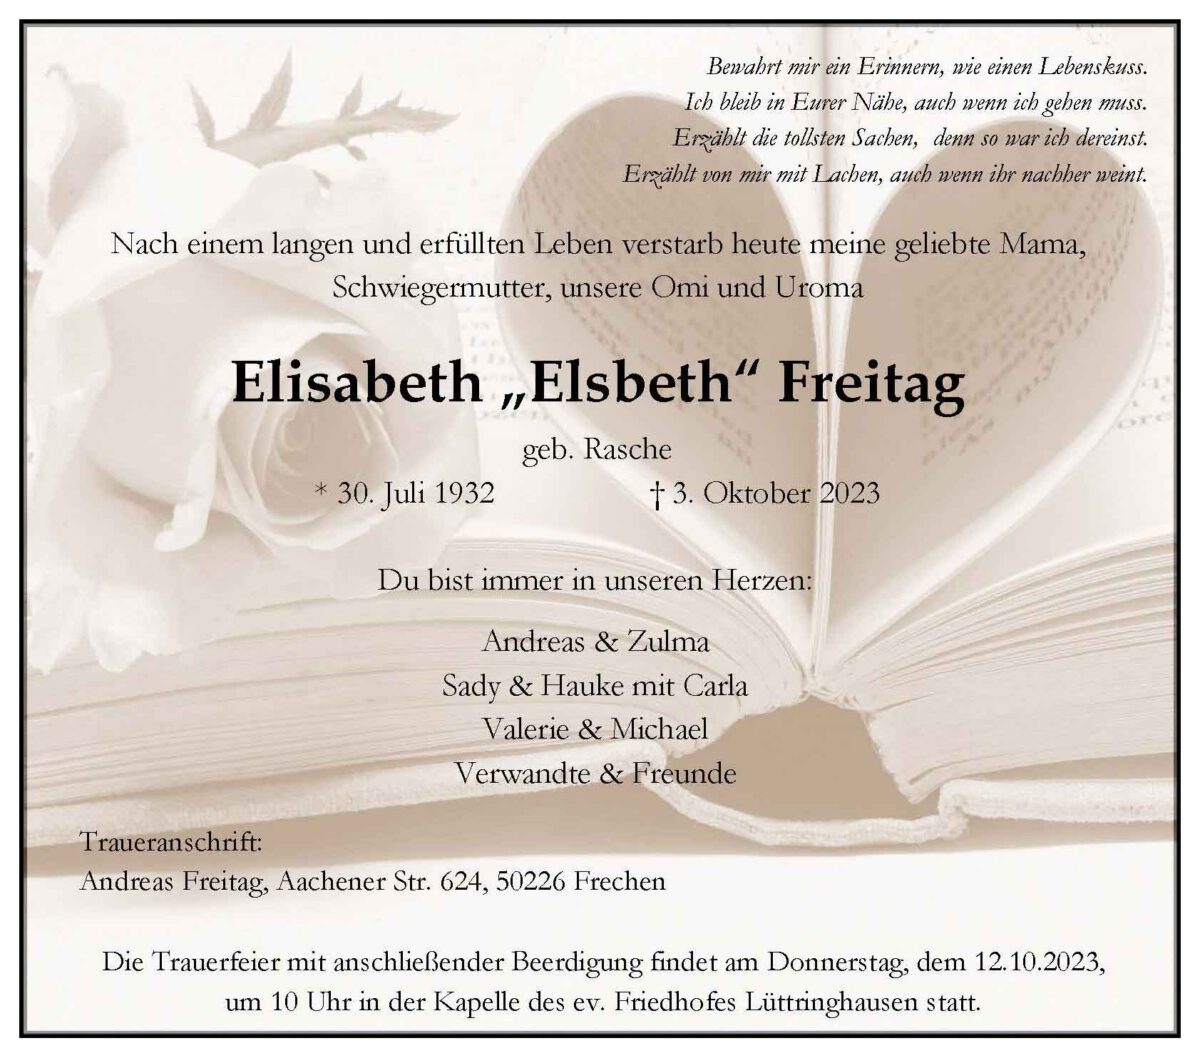 Elisabeth „Elsbeth“ Freitag